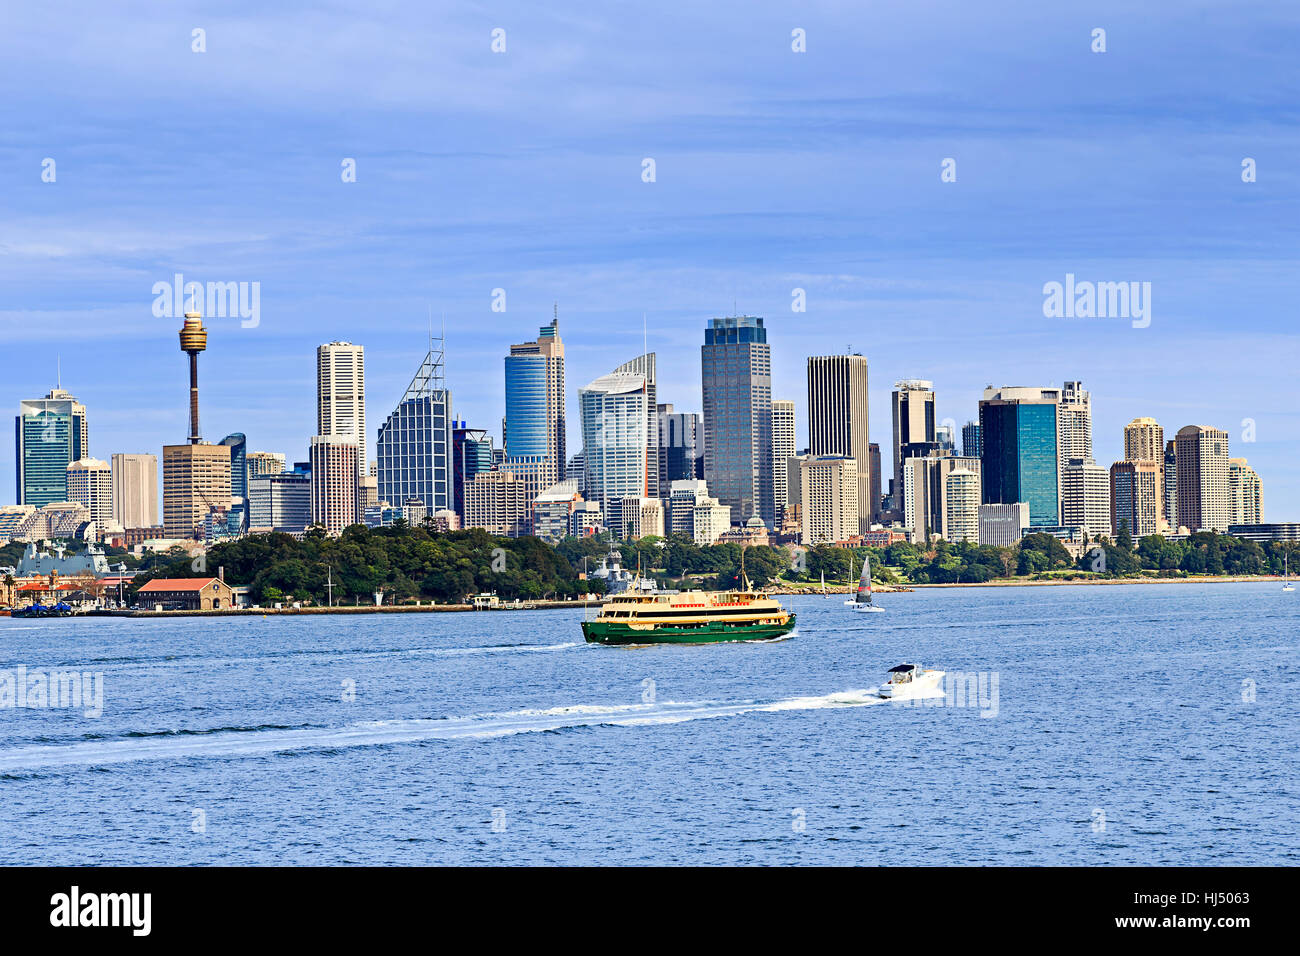 Ville de Sydney CBD landmarks et les bâtiments au-dessus du Jardin botanique royal de Sydney Harbour avec acrosss de passagers en premier plan sur une journée ensoleillée. Banque D'Images